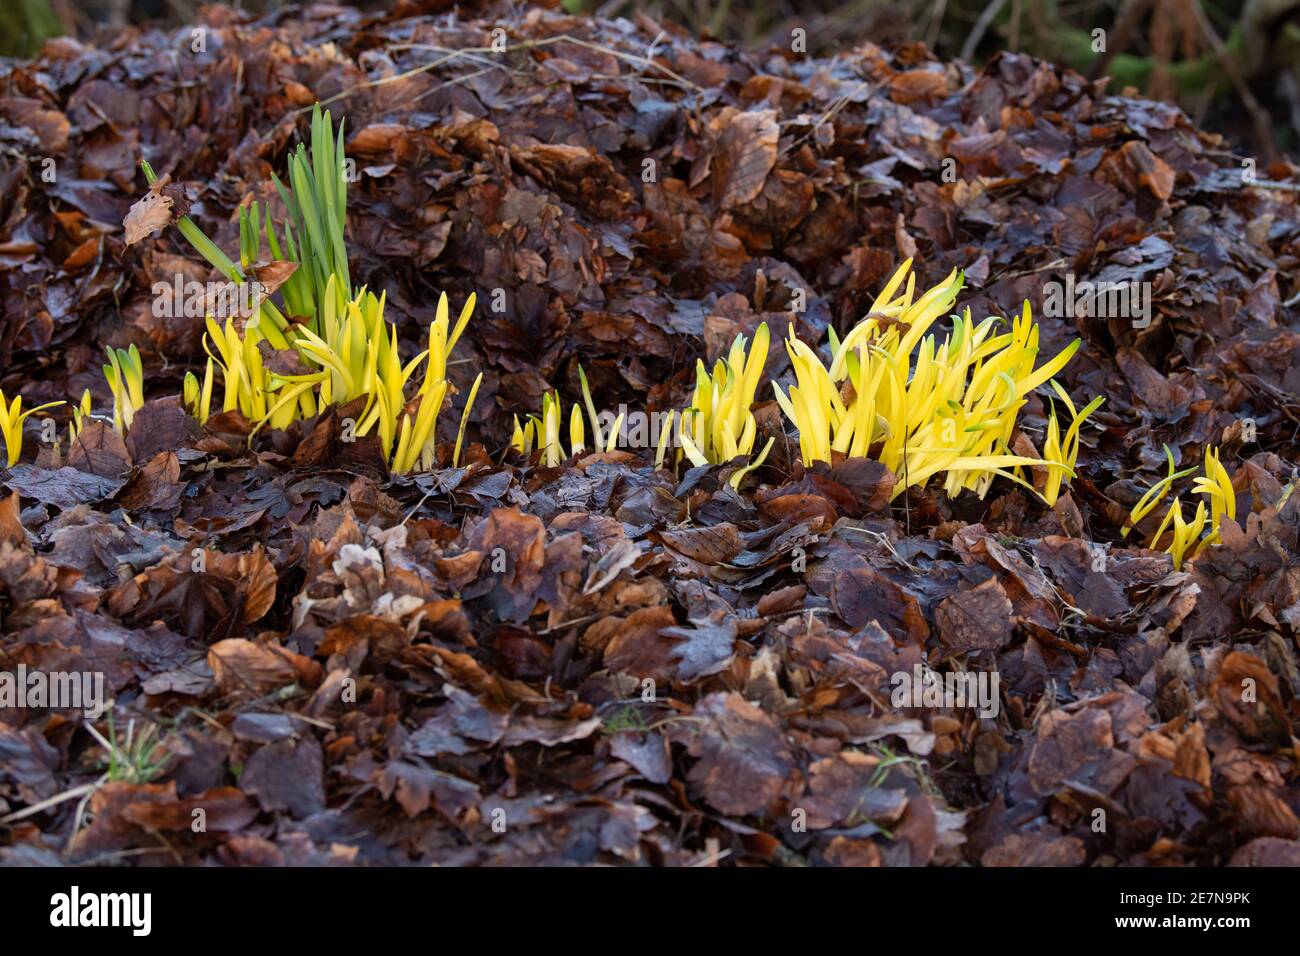 Chlorose (jaunissement) des feuilles de jonquilles qui ont été couvertes de litière de feuilles profondes tout en les privant de la lumière du soleil - Écosse, Royaume-Uni Banque D'Images